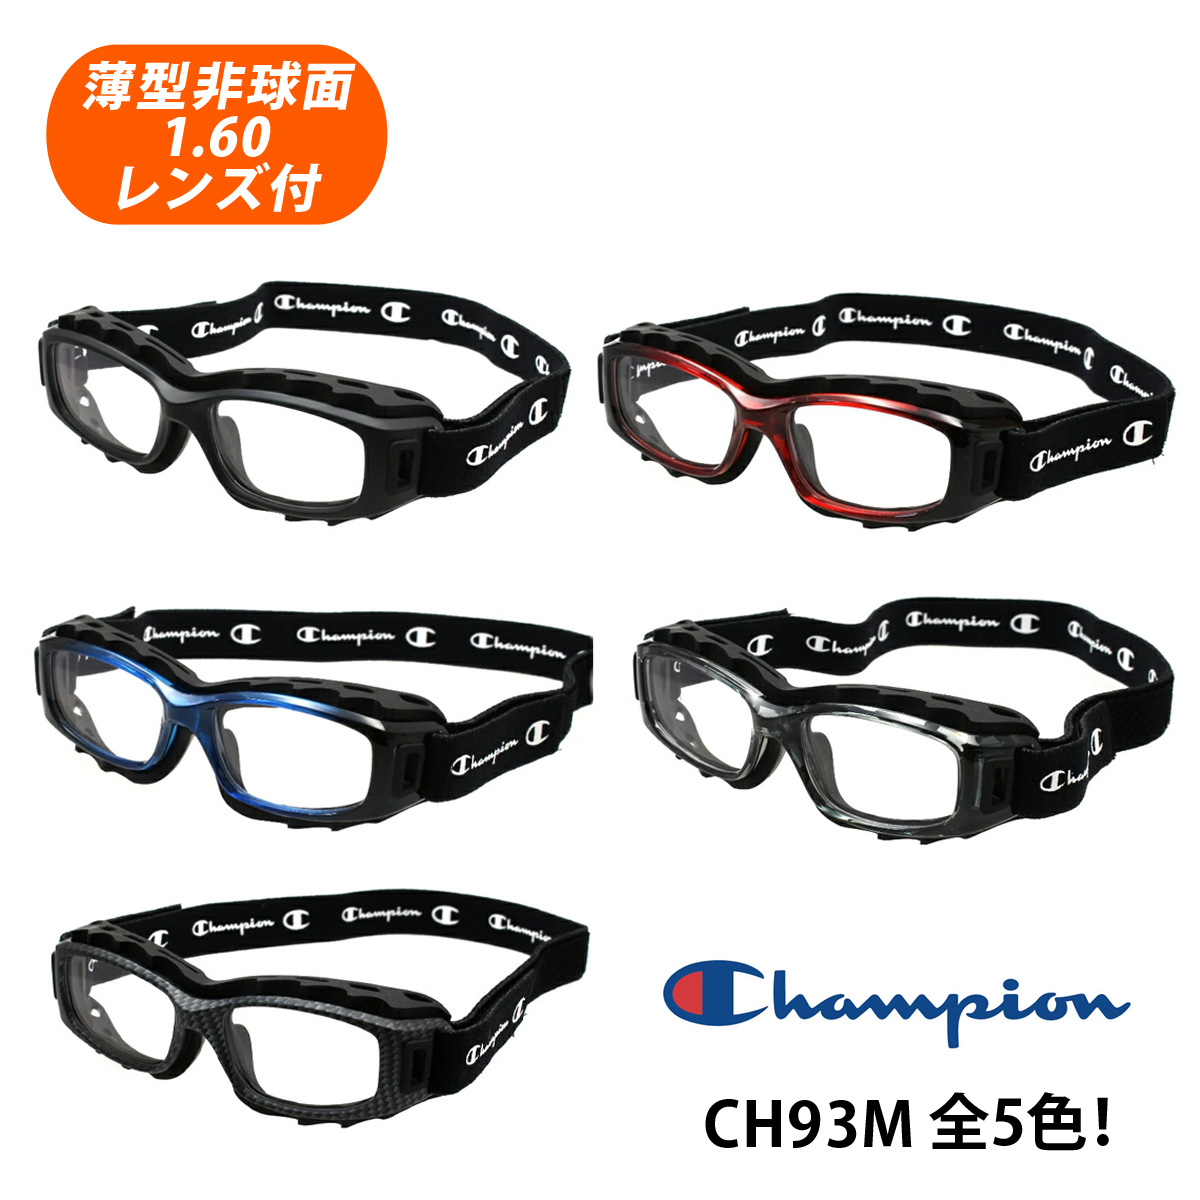 郵送なら送料無料 G EYES アイゴーグル 専用フロント樹脂パーツ ジーアイズ 交換用フロントパッドパーツ Eye-Goggles